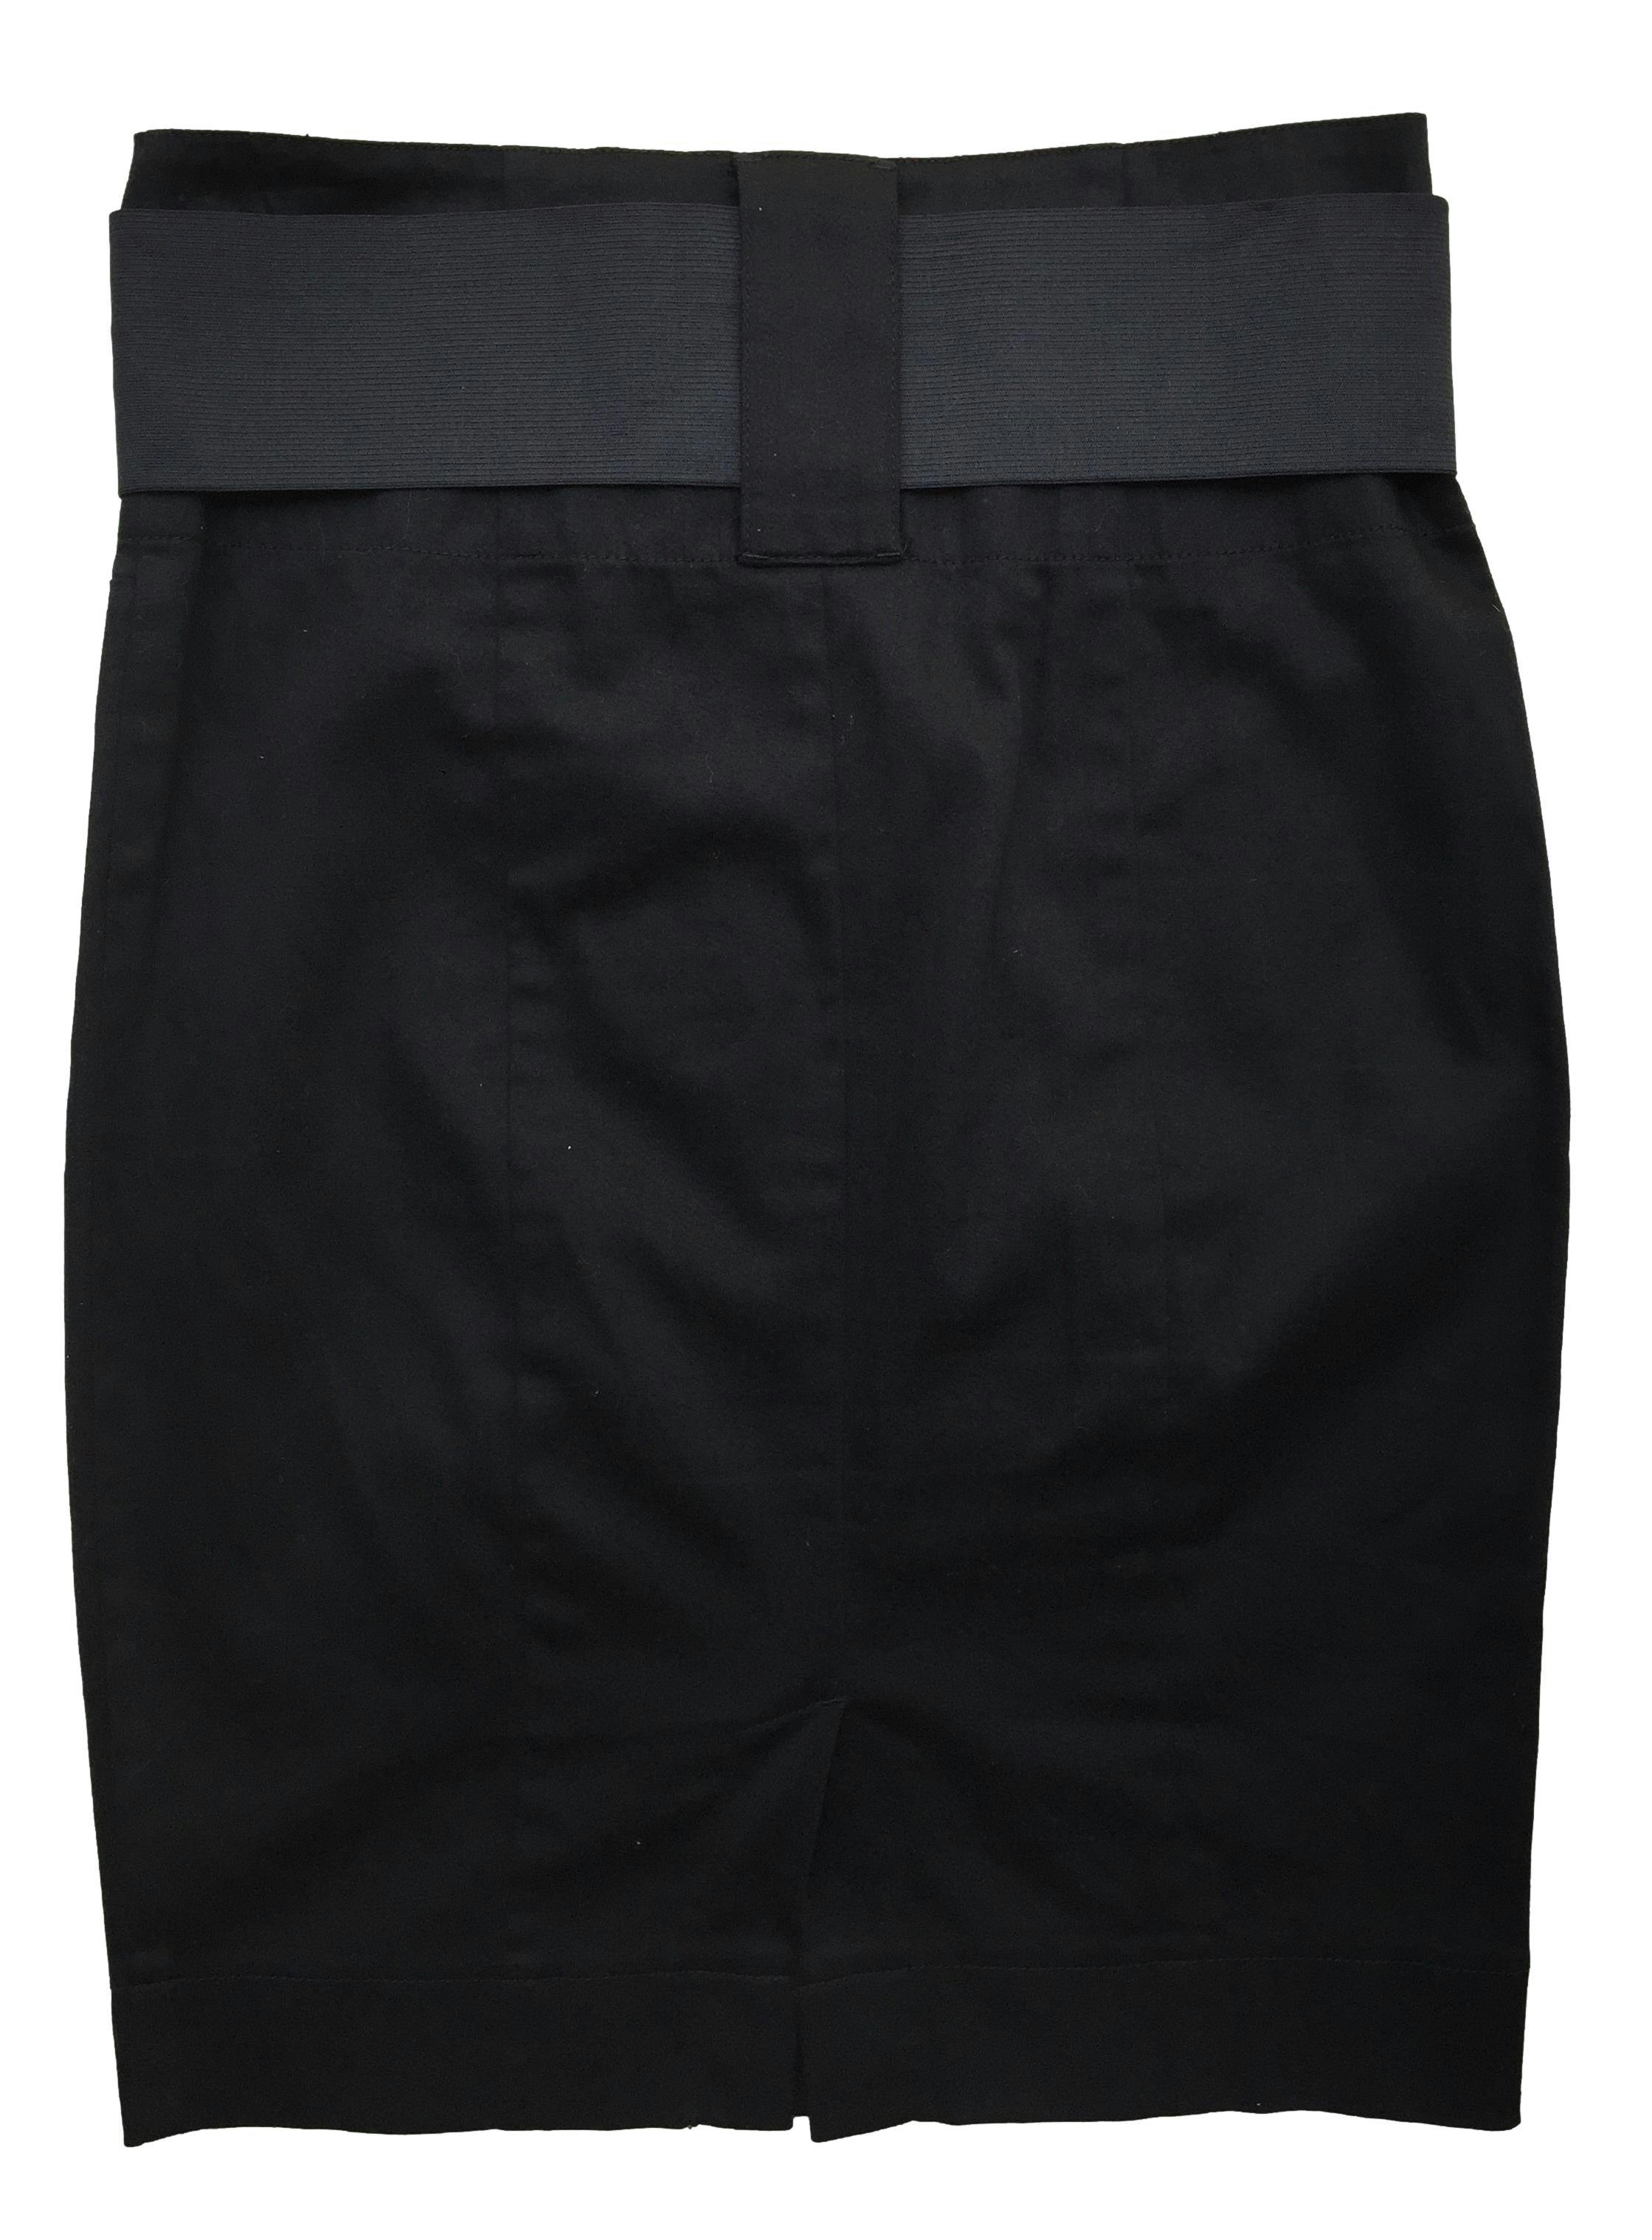 Falda Guess negra 98% algodón, con correa elástica, corte pencil. Cintura 72cm Largo 55cm